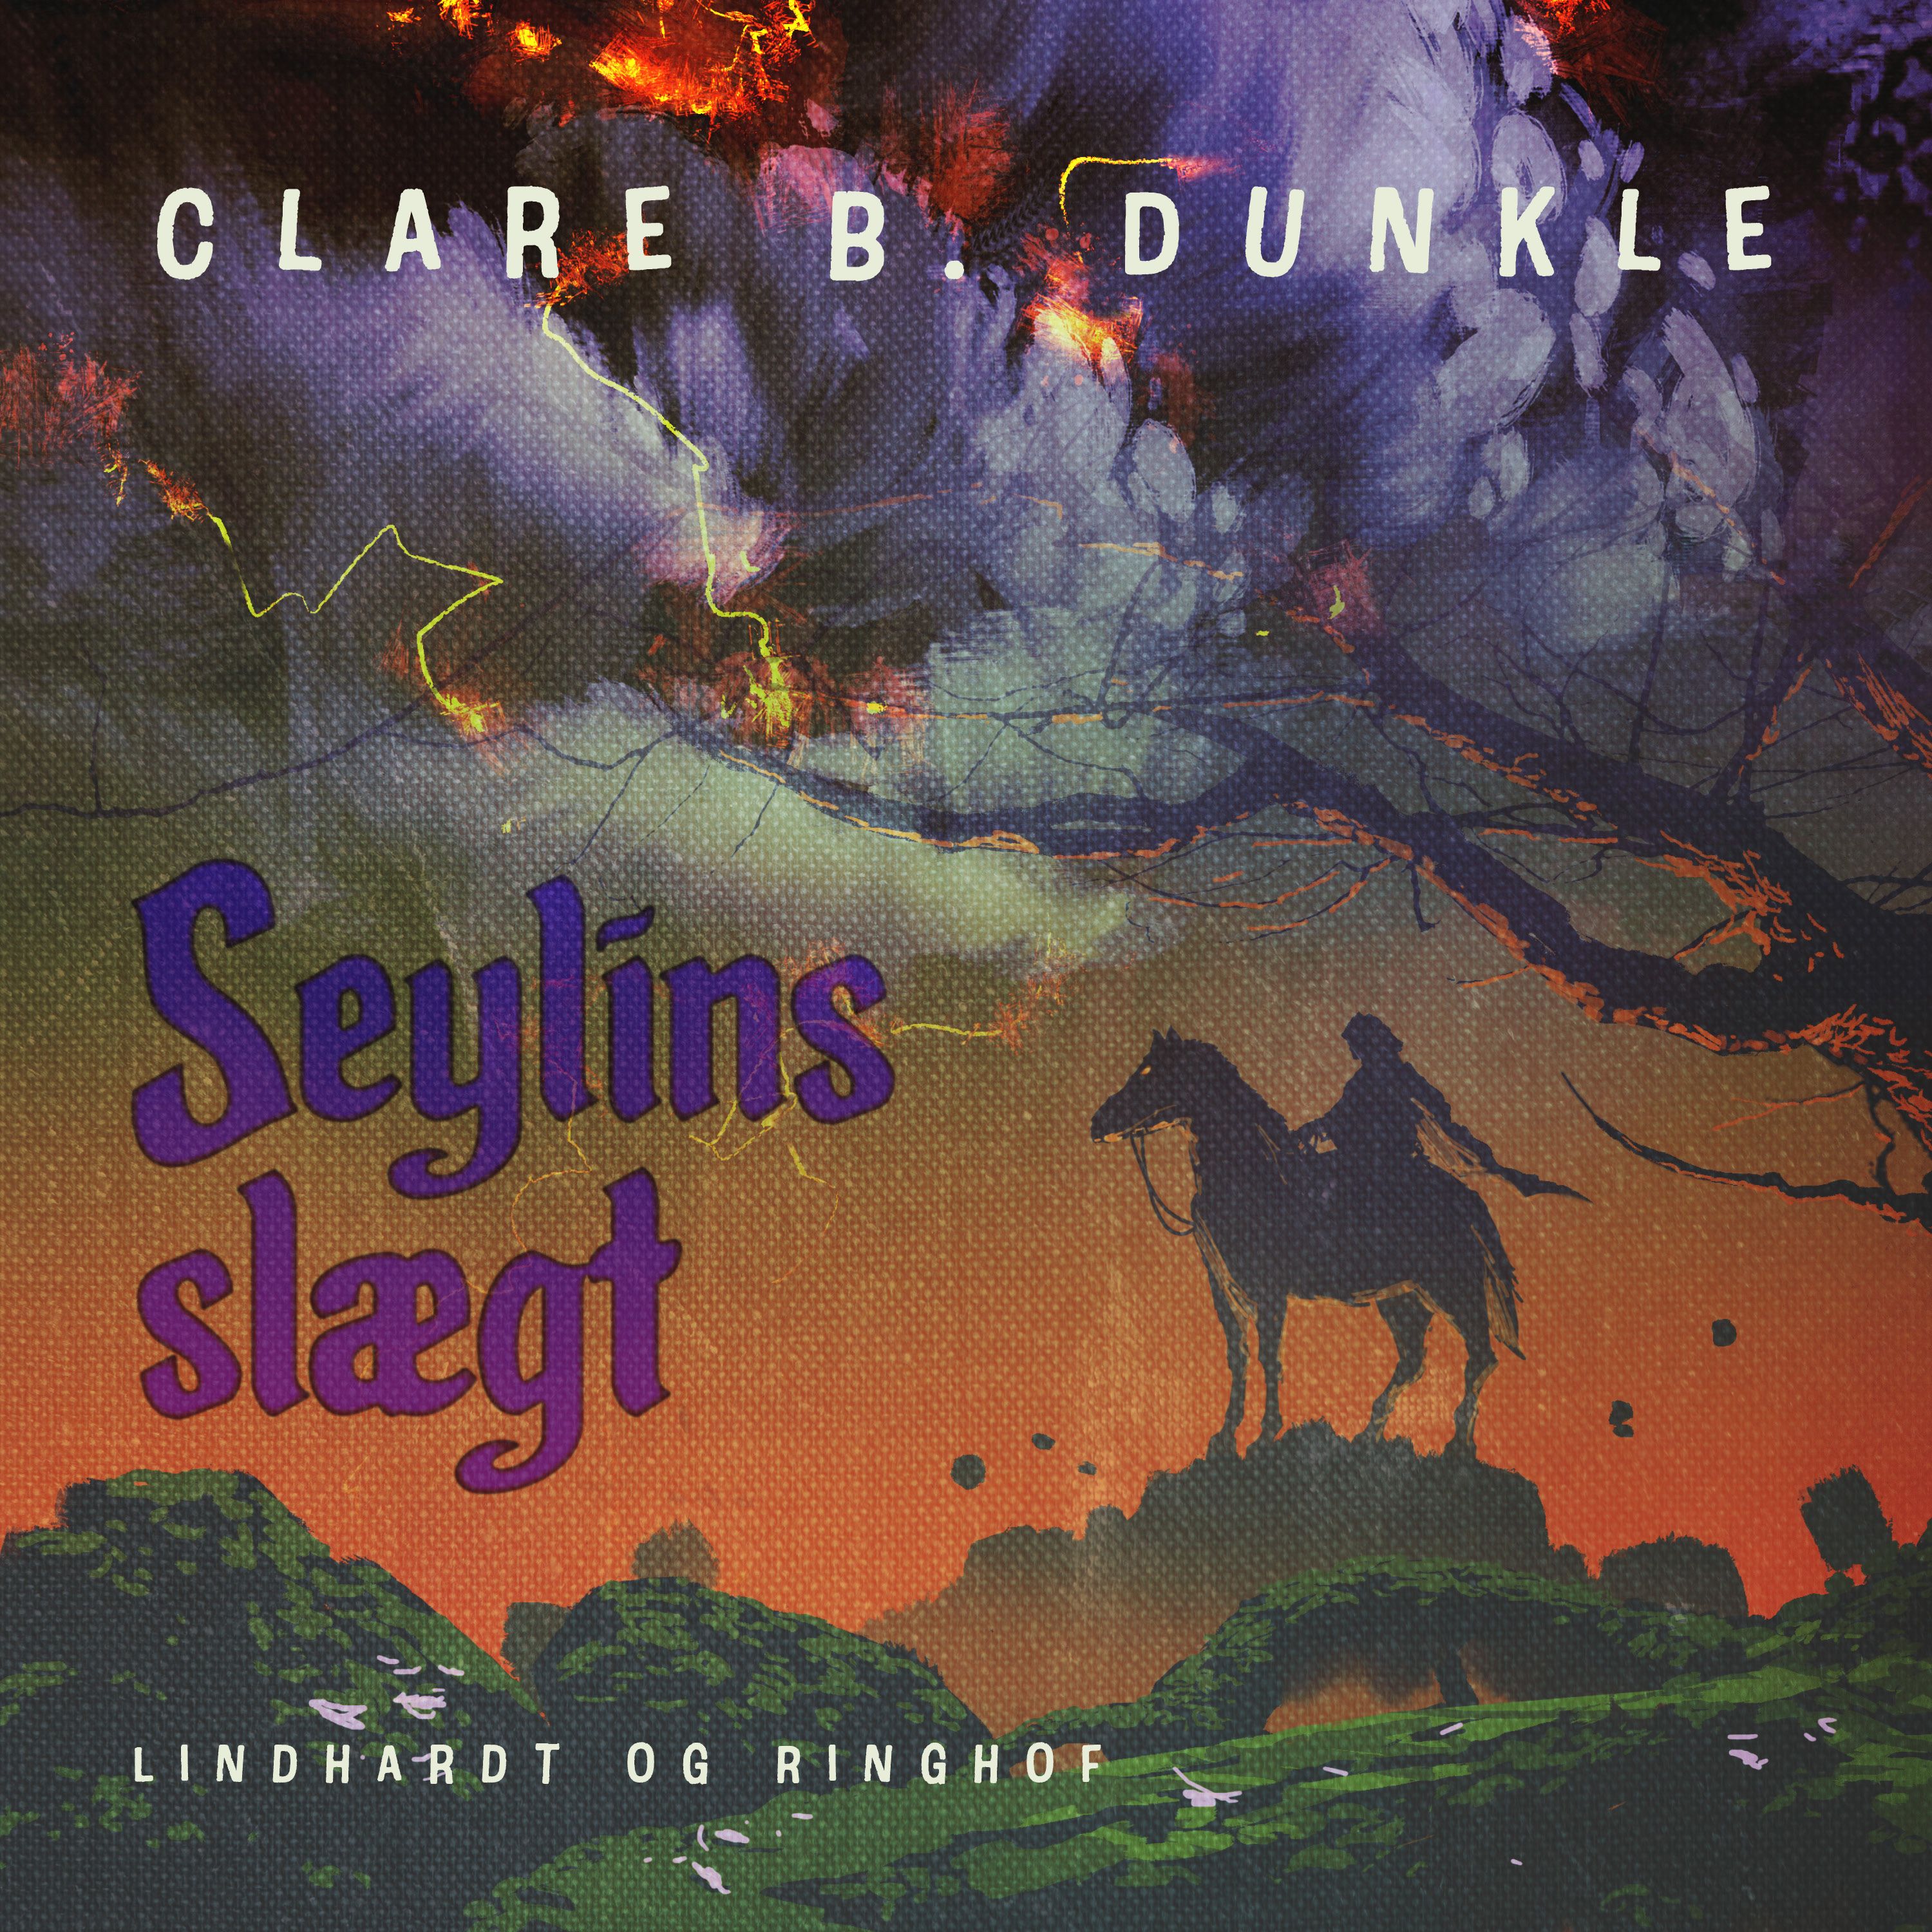 Seylins slægt, ljudbok av Clare B. Dunkle